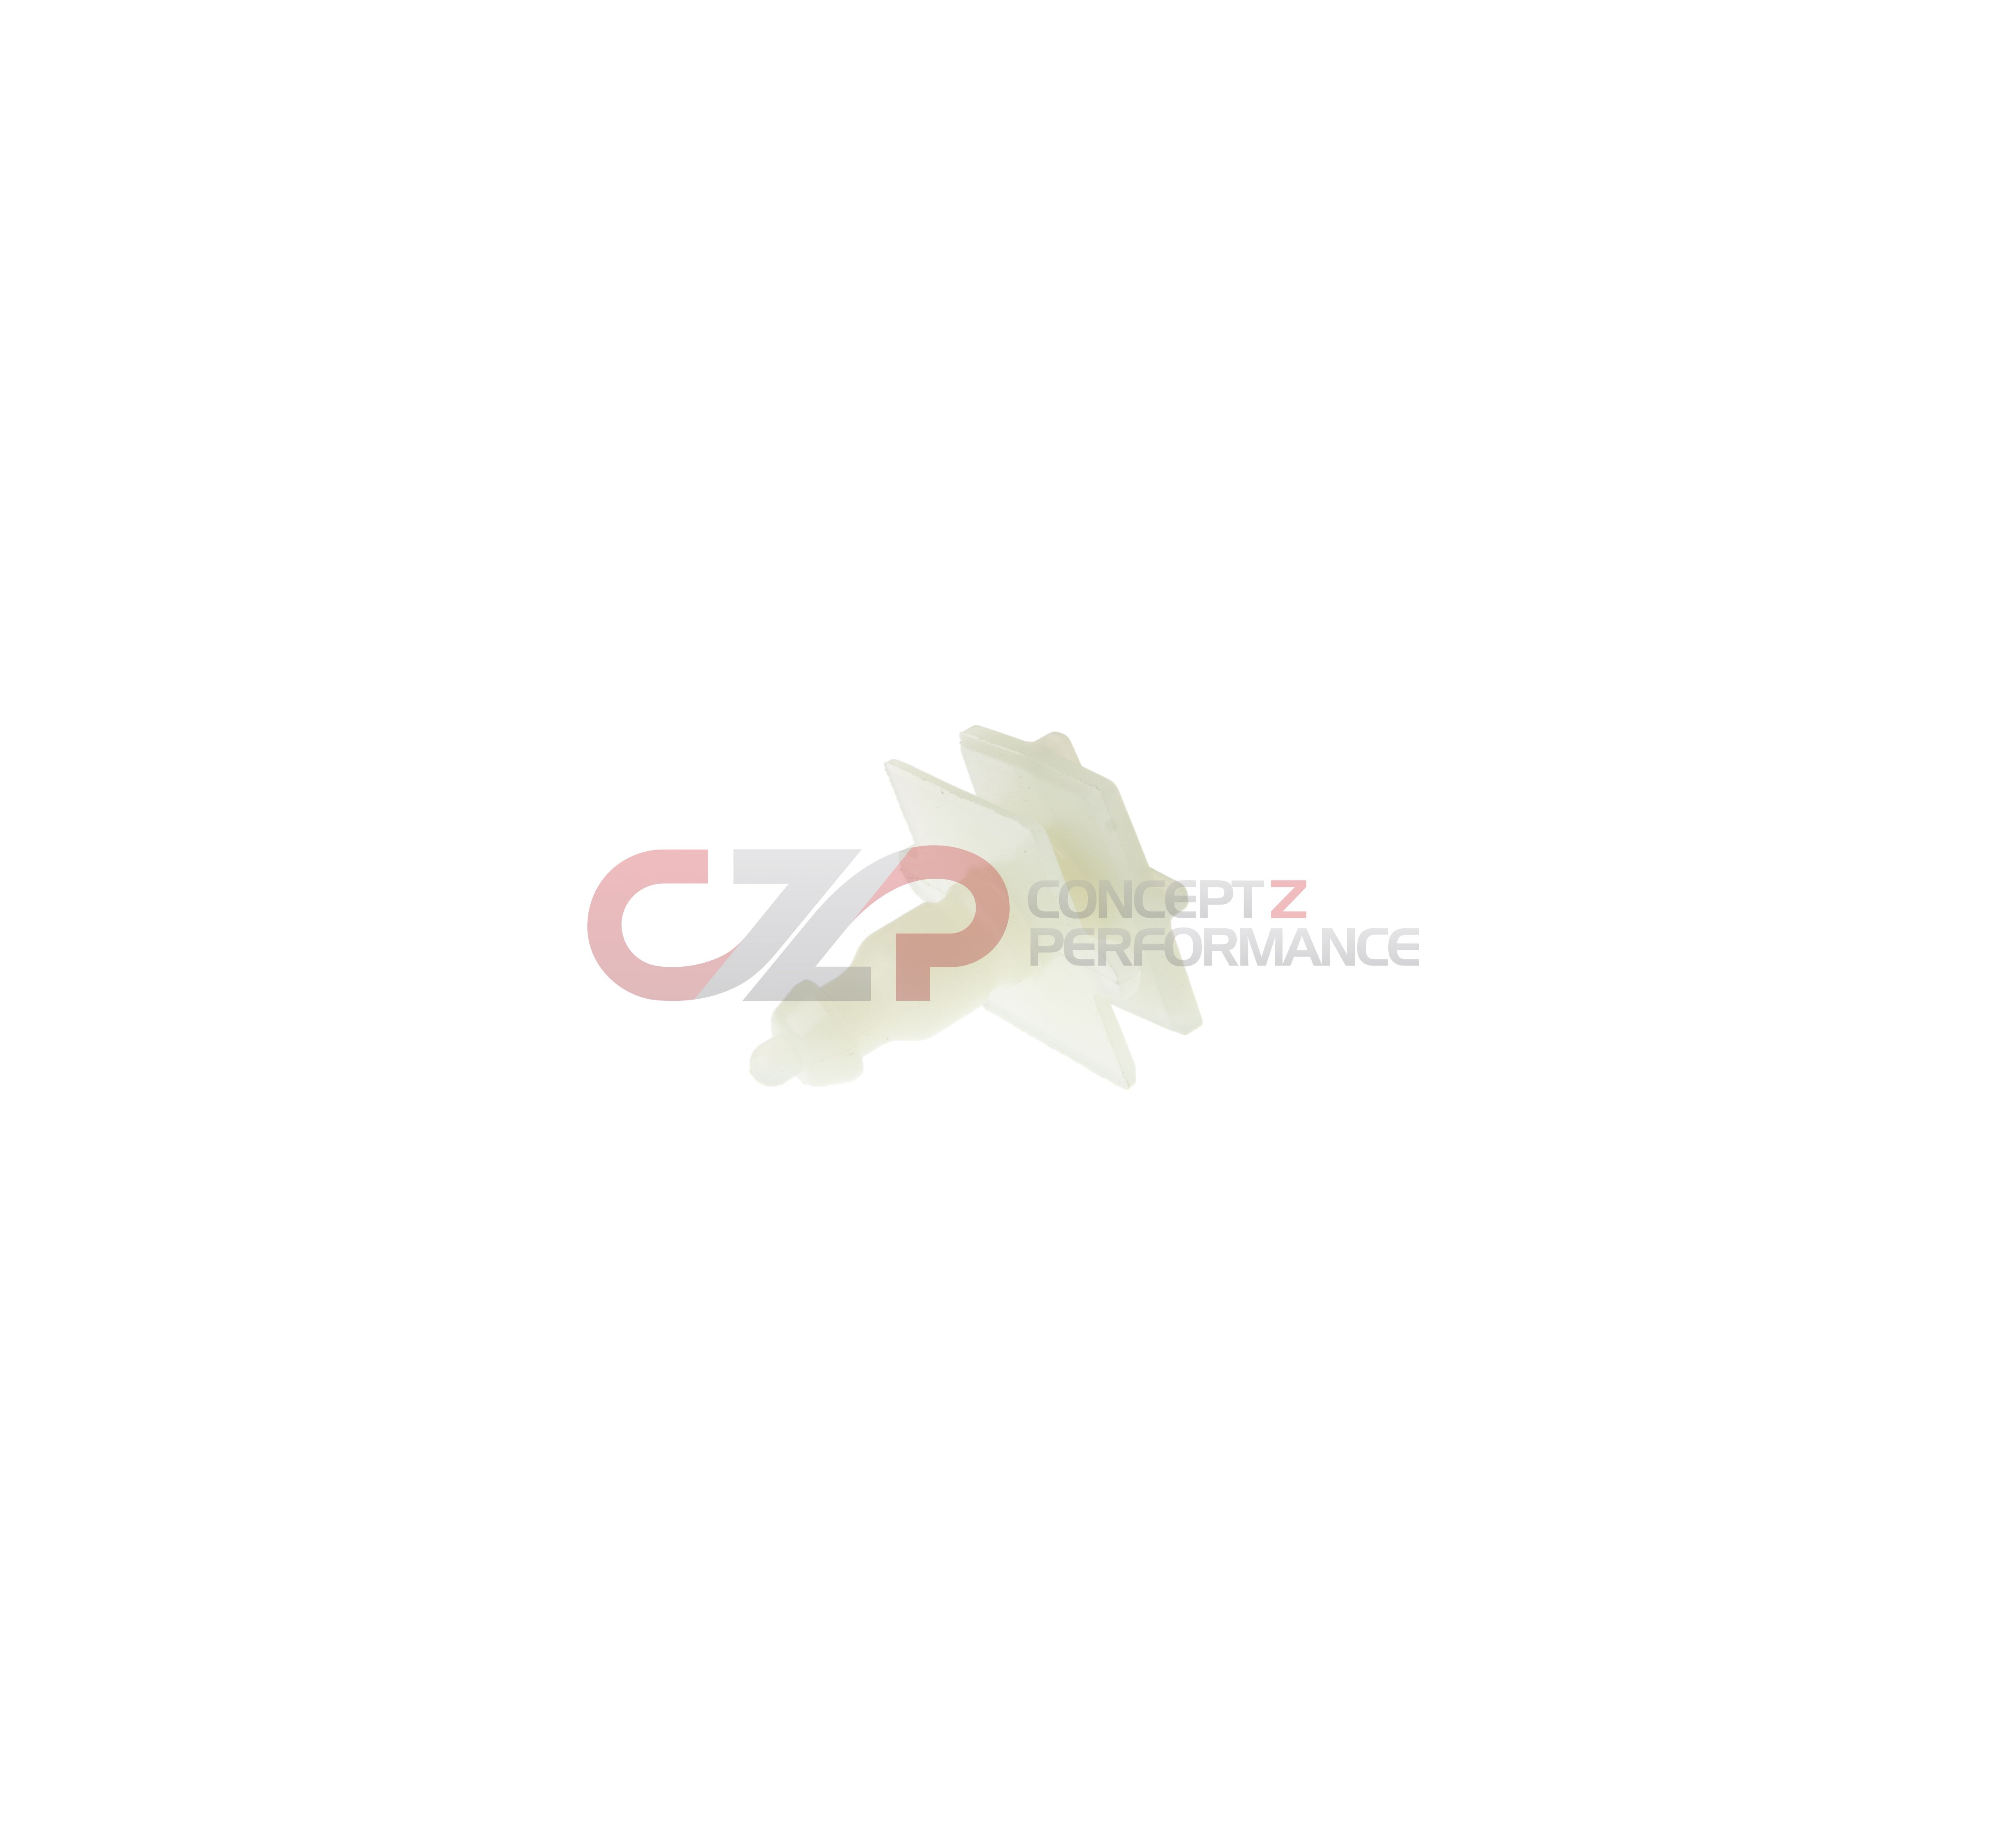 Infiniti OEM Side Skirt Rocker Clip - Infiniti G37 Q60 Coupe CV36